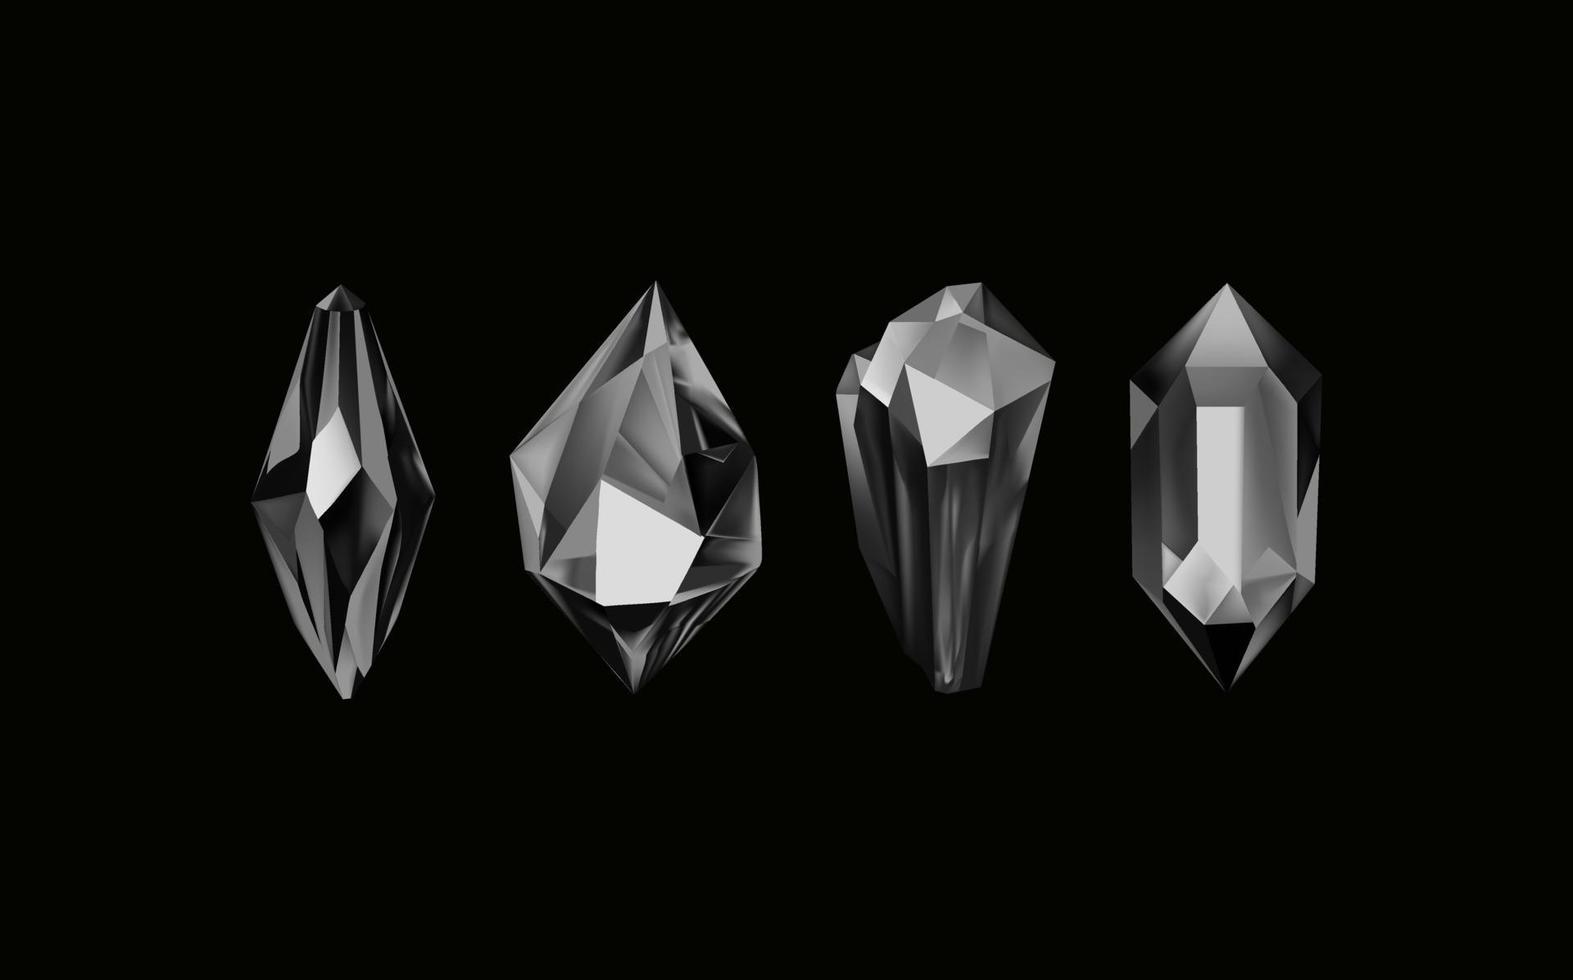 uma coleção do imagens do Preto diamantes do vários geométrico formas e tamanhos.vidro brilhante cristais com diferente tons refletindo vetor de luz realista conjunto do brilho pedra preciosa ou colorida gelo.